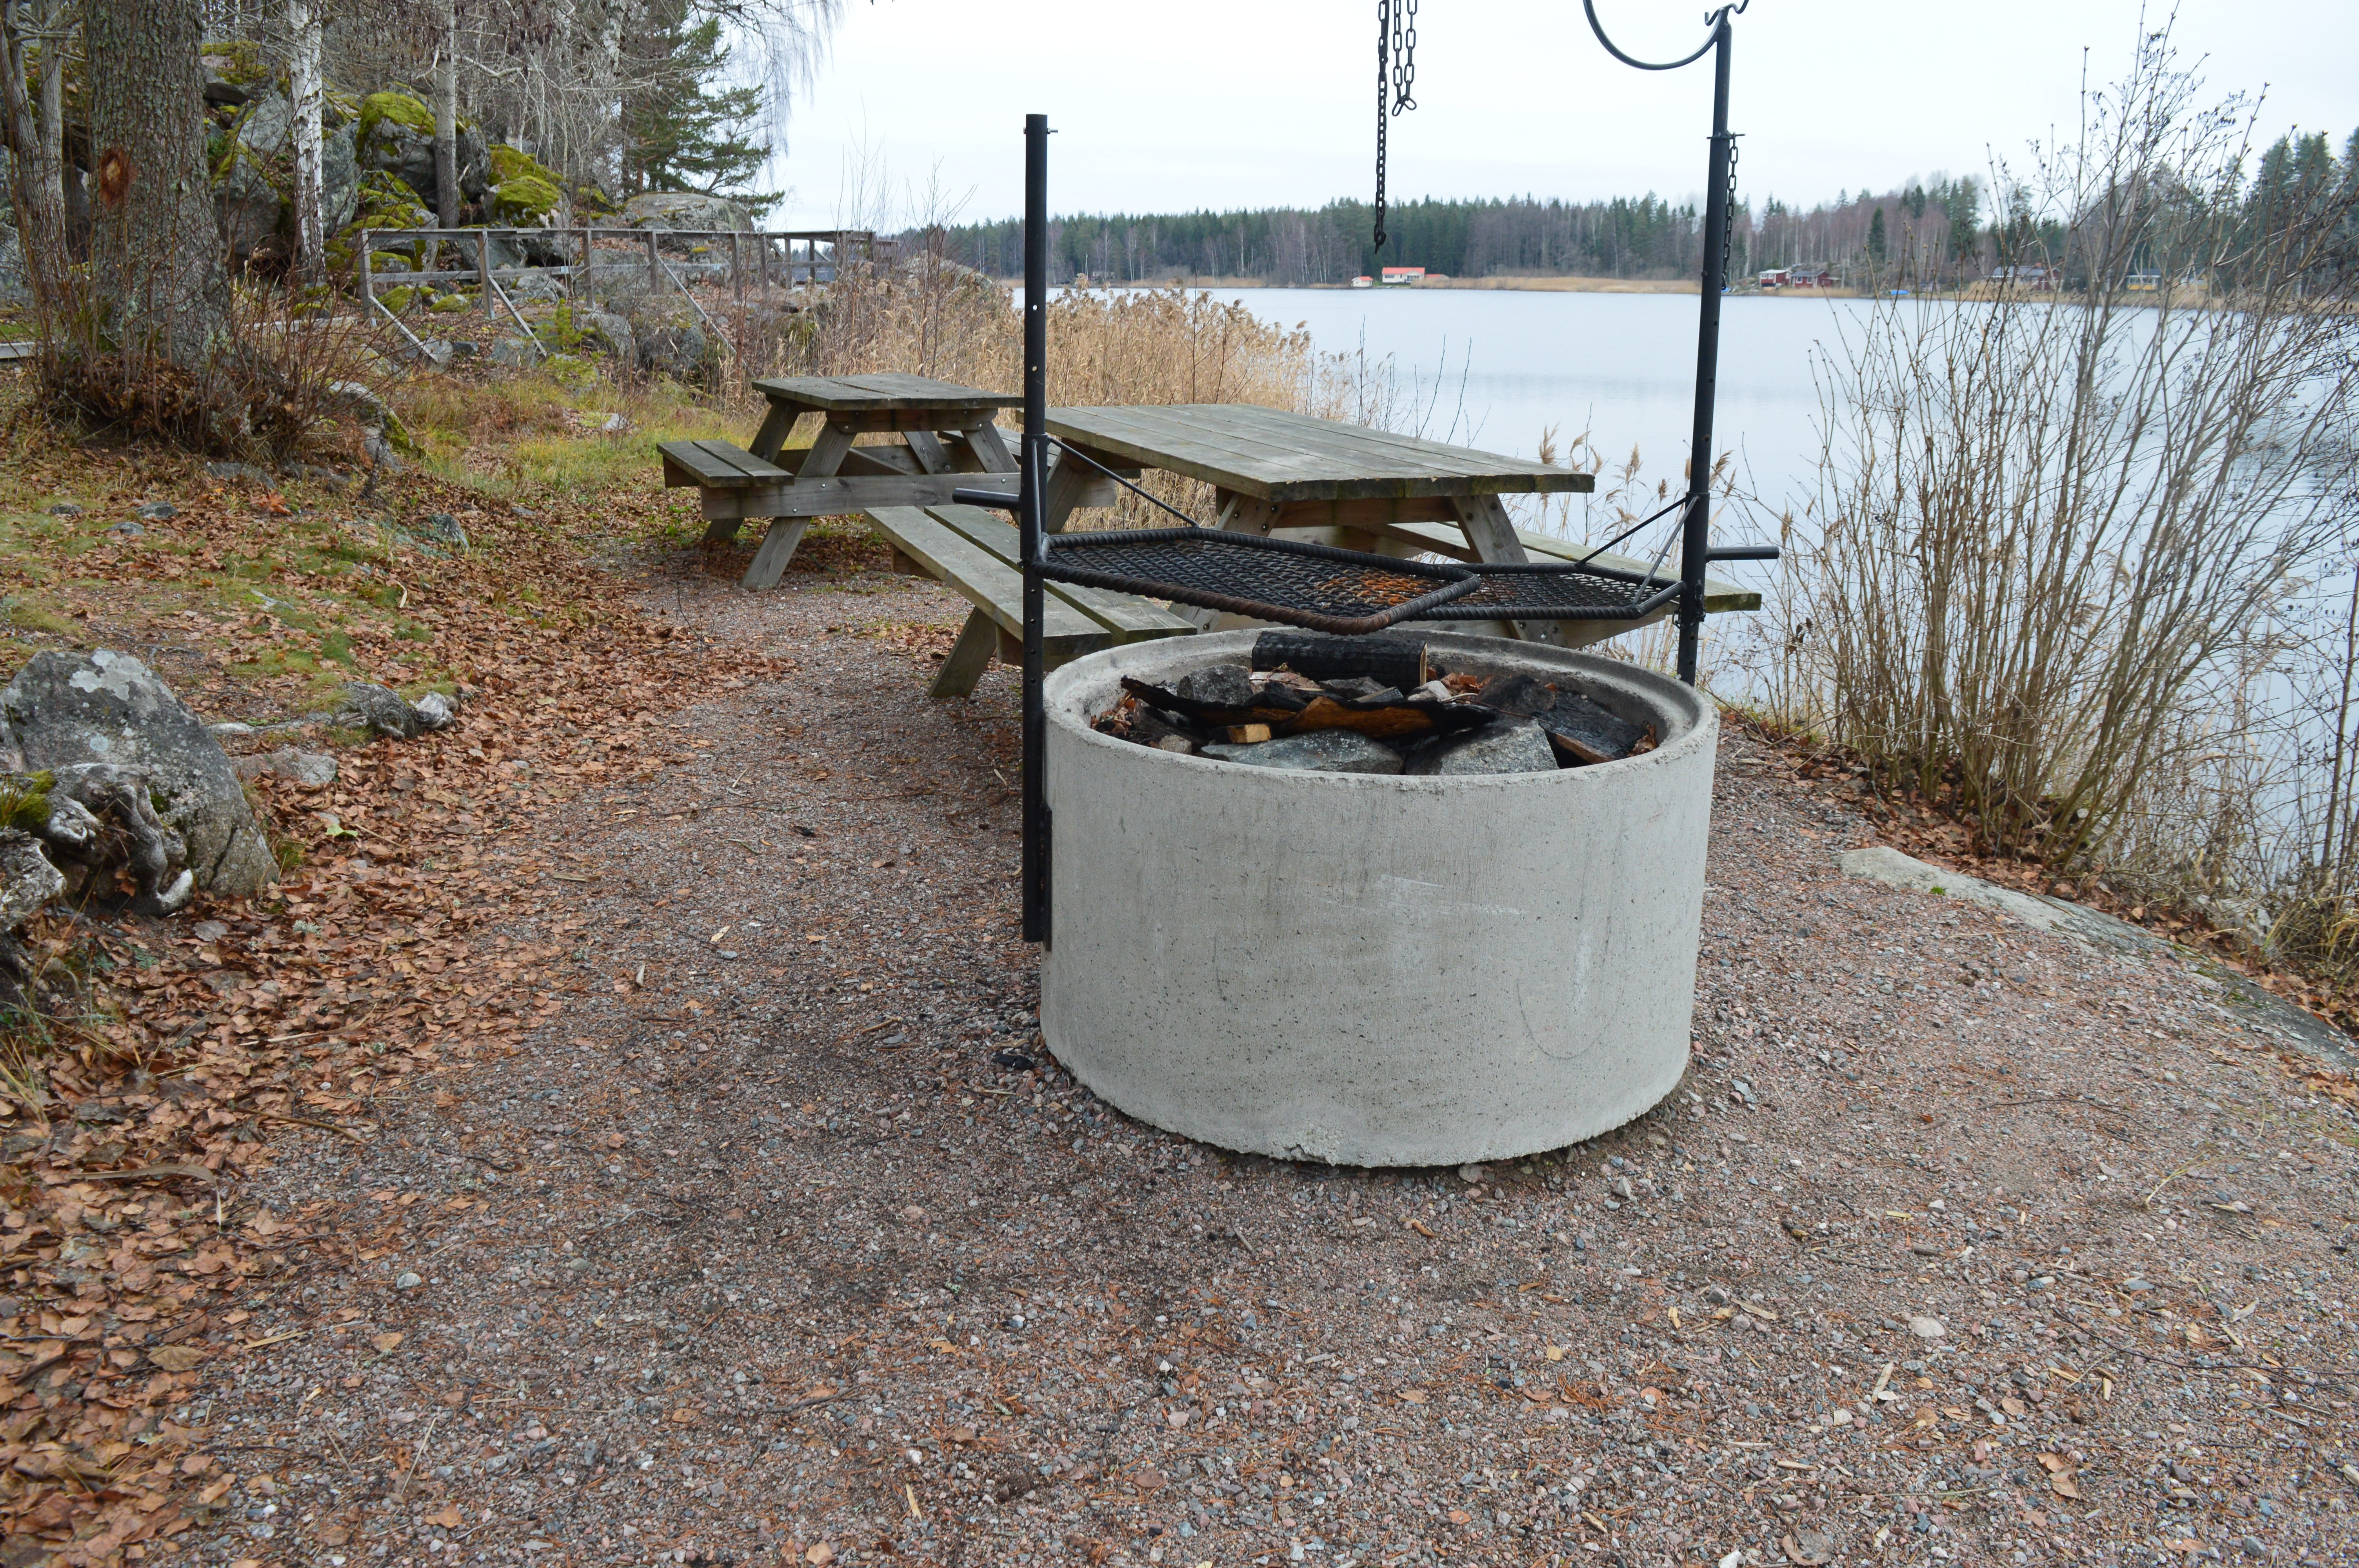 En grillplats med två grillgaller ovanpå står på grusad yta vid vattnet. Bakom grillplatser finns två bänkbord.